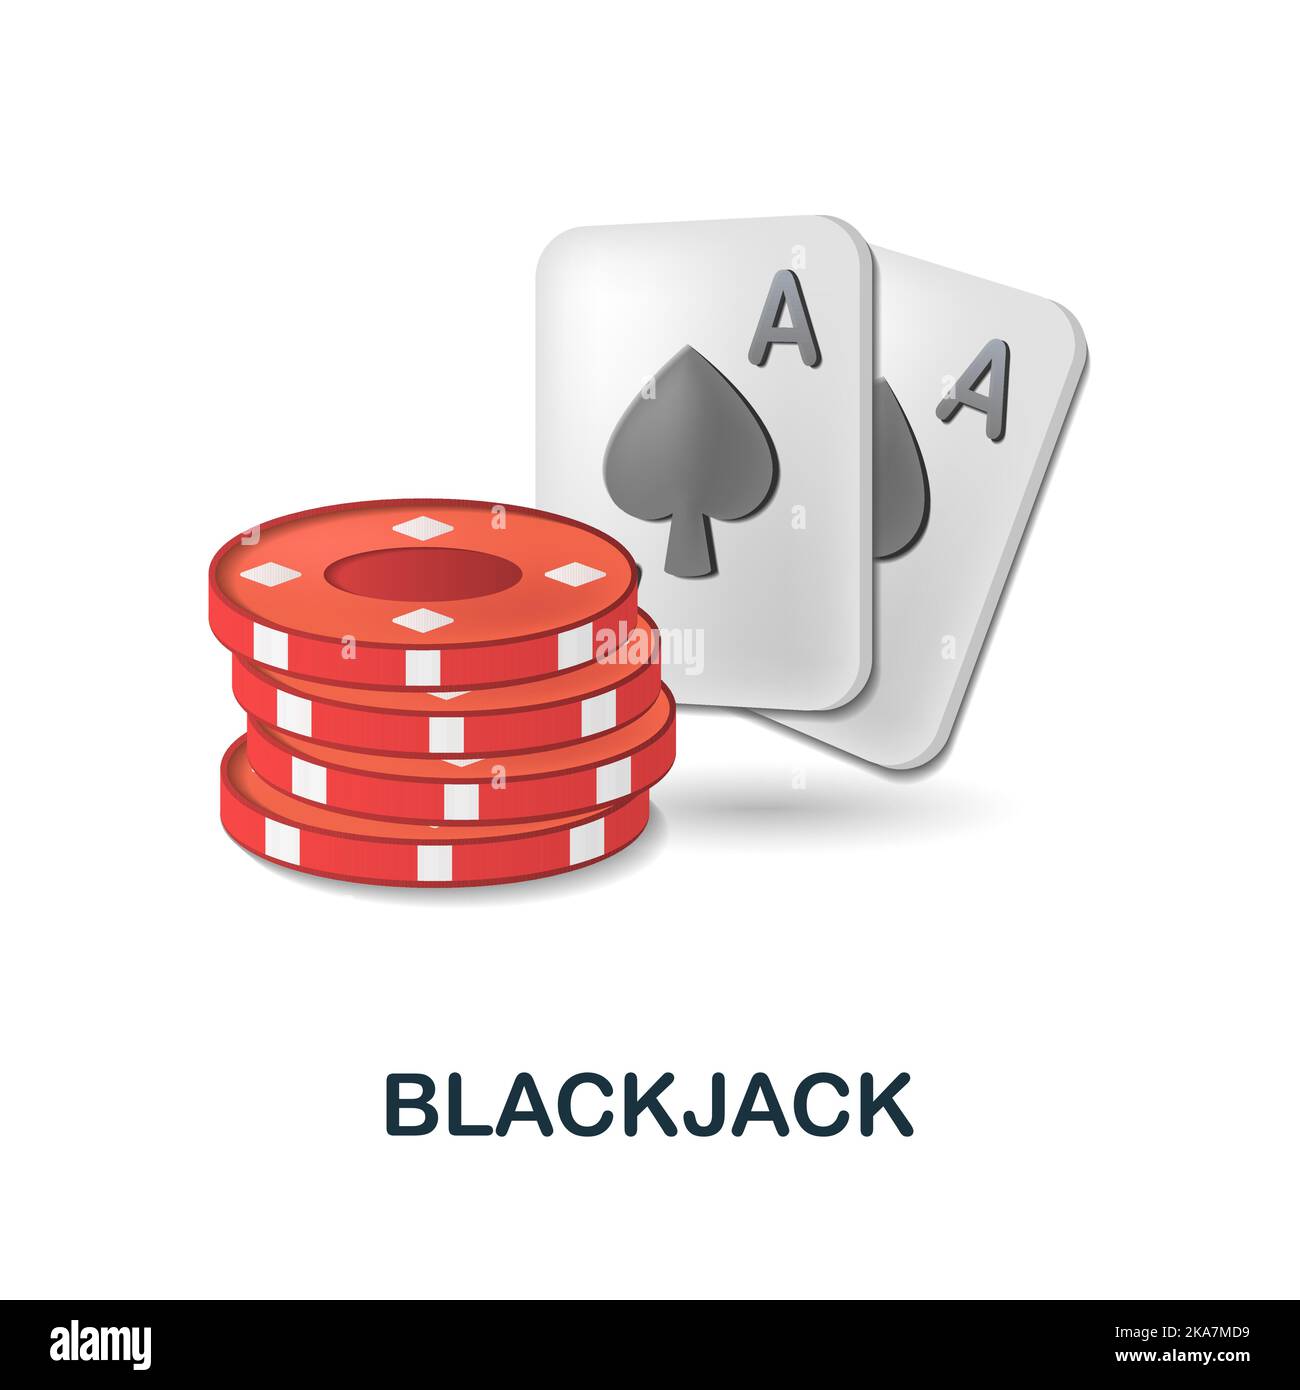 casino live blackjack